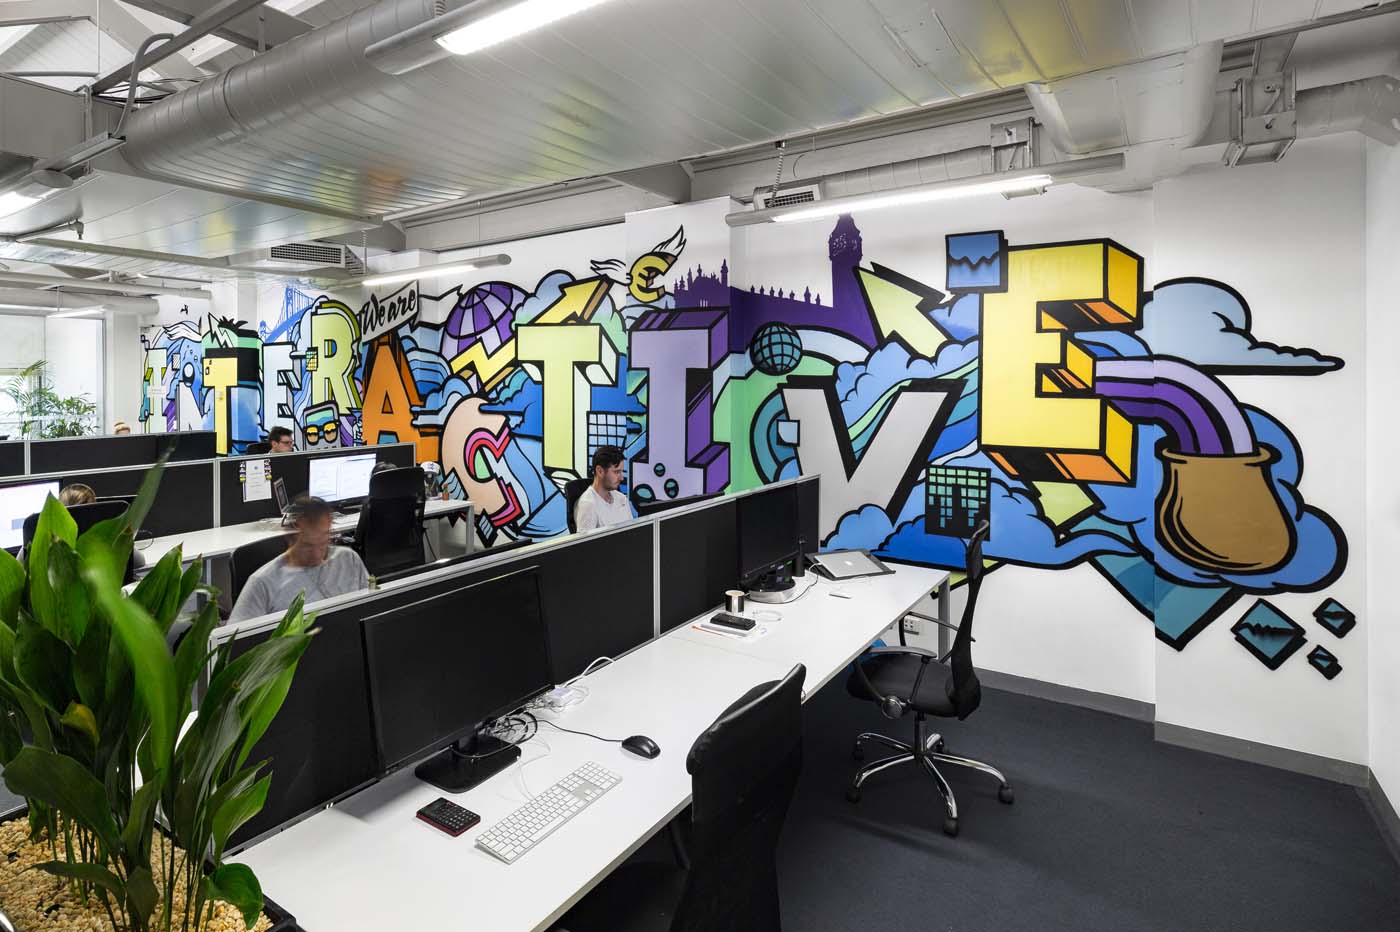 Банк тинькофф нижний офис. Роспись стен в офисе. Граффити в офисе. Граффити в офисе на стене. Офис в стиле граффити.